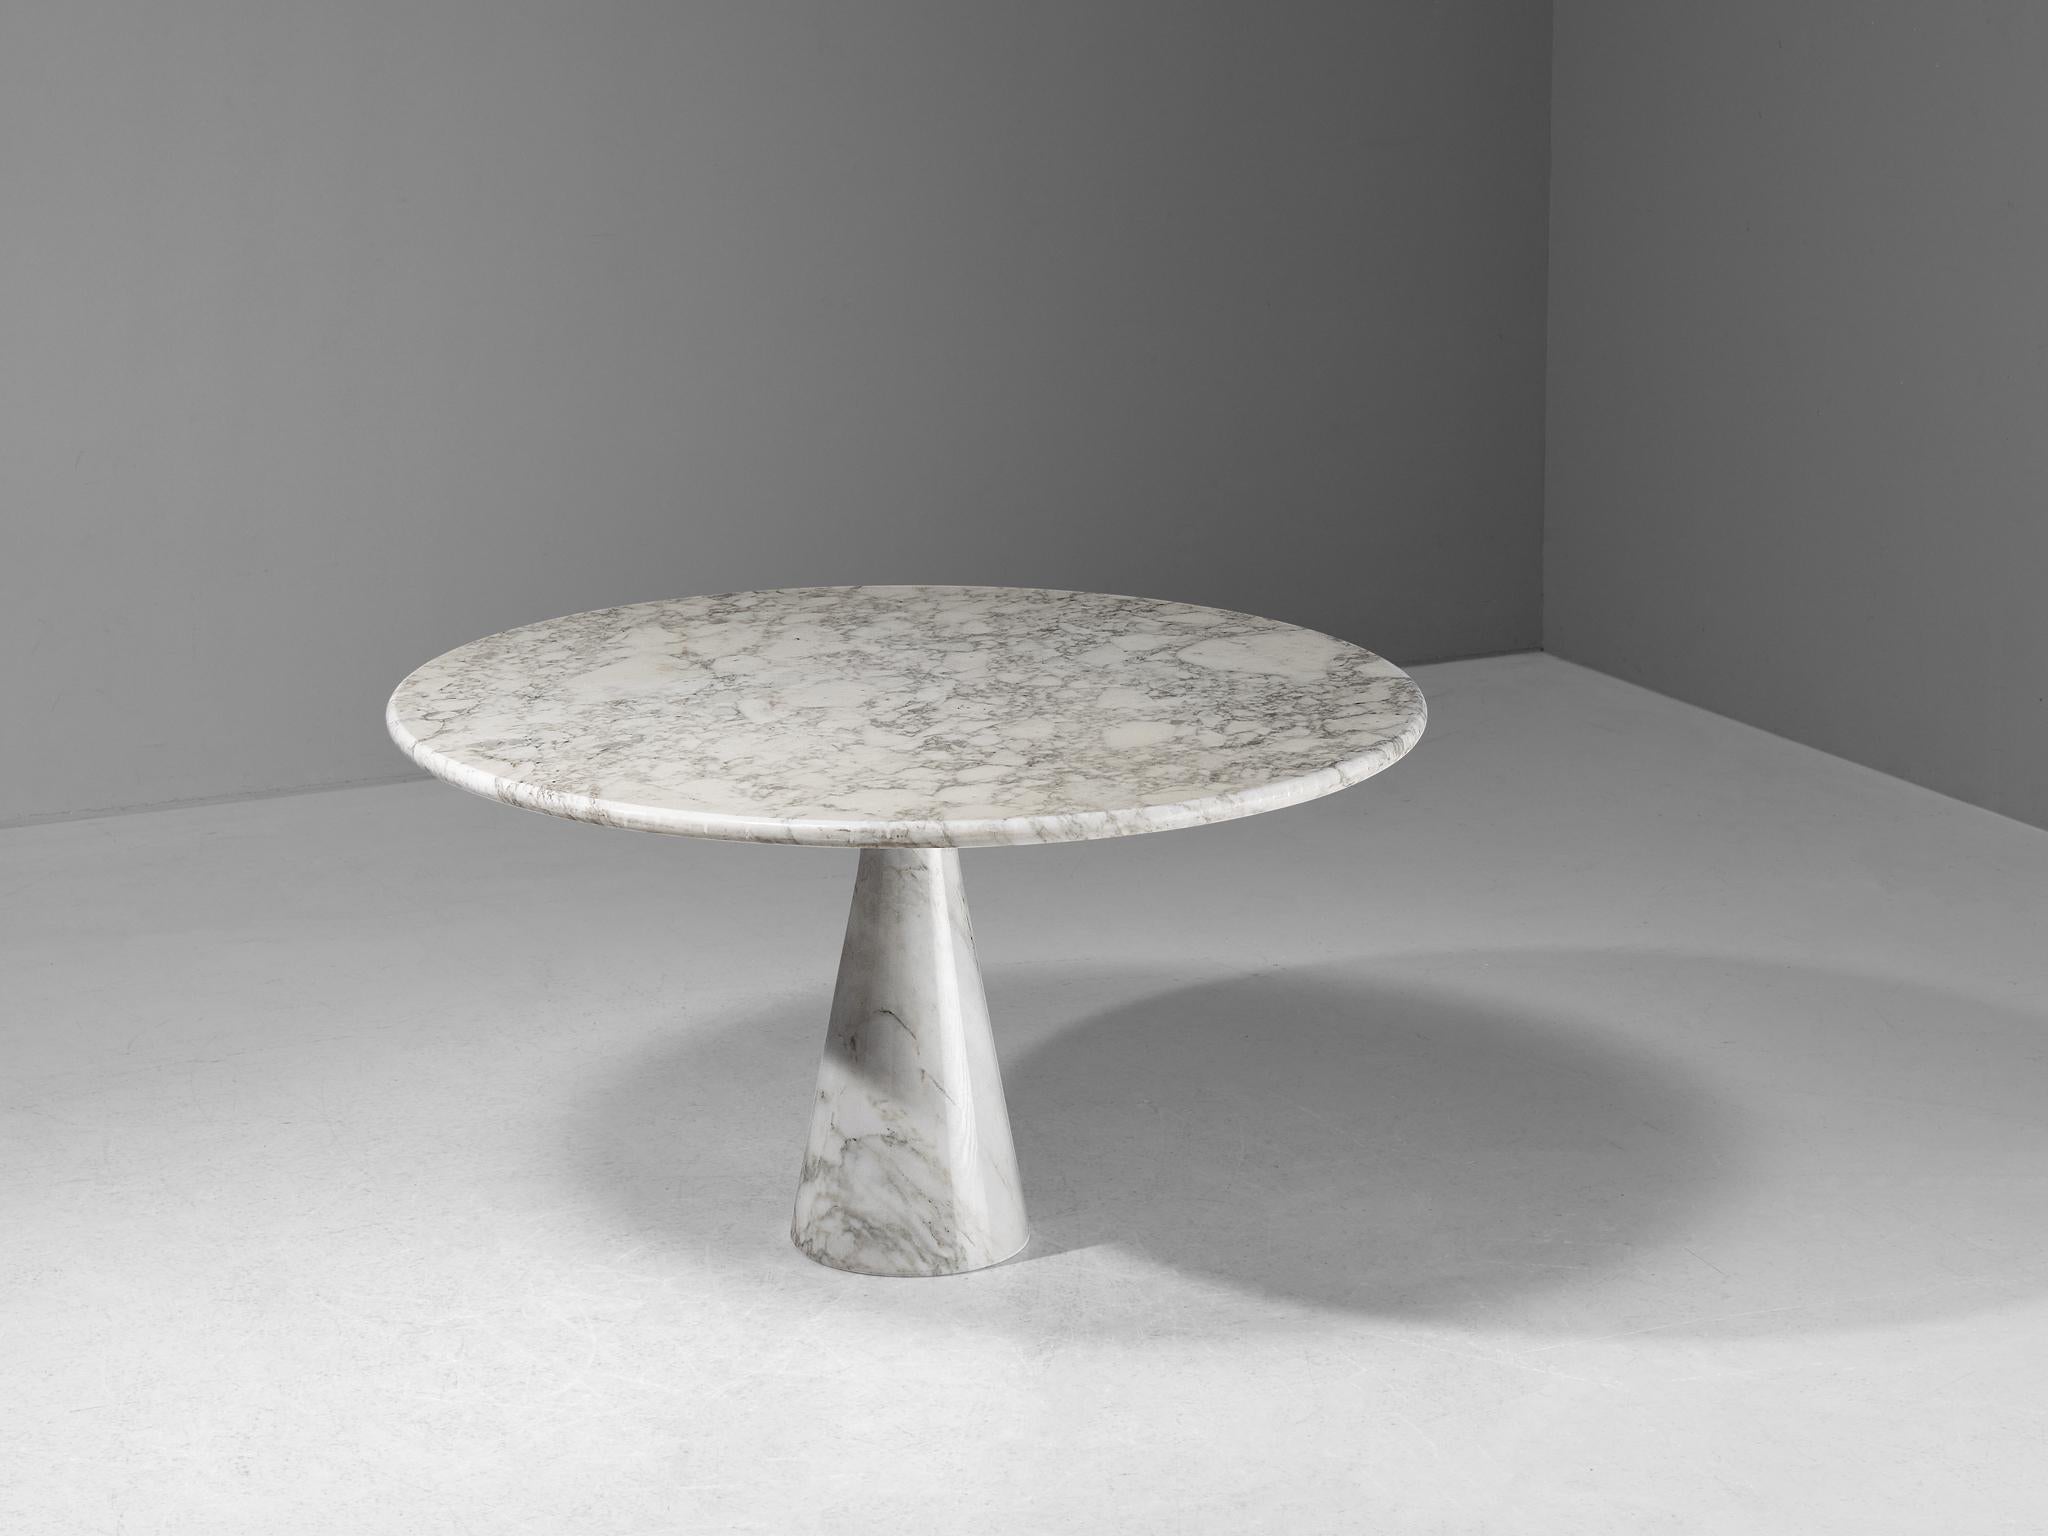 Angelo Mangiarotti pour Skipper, table de salle à manger 'M1', marbre Calacatta, 1969

Cette table sculpturale d'Angelo Mangiarotti est un exemple habile de design postmoderne. La table aux motifs blancs et gris frappants est dotée d'un piédestal en